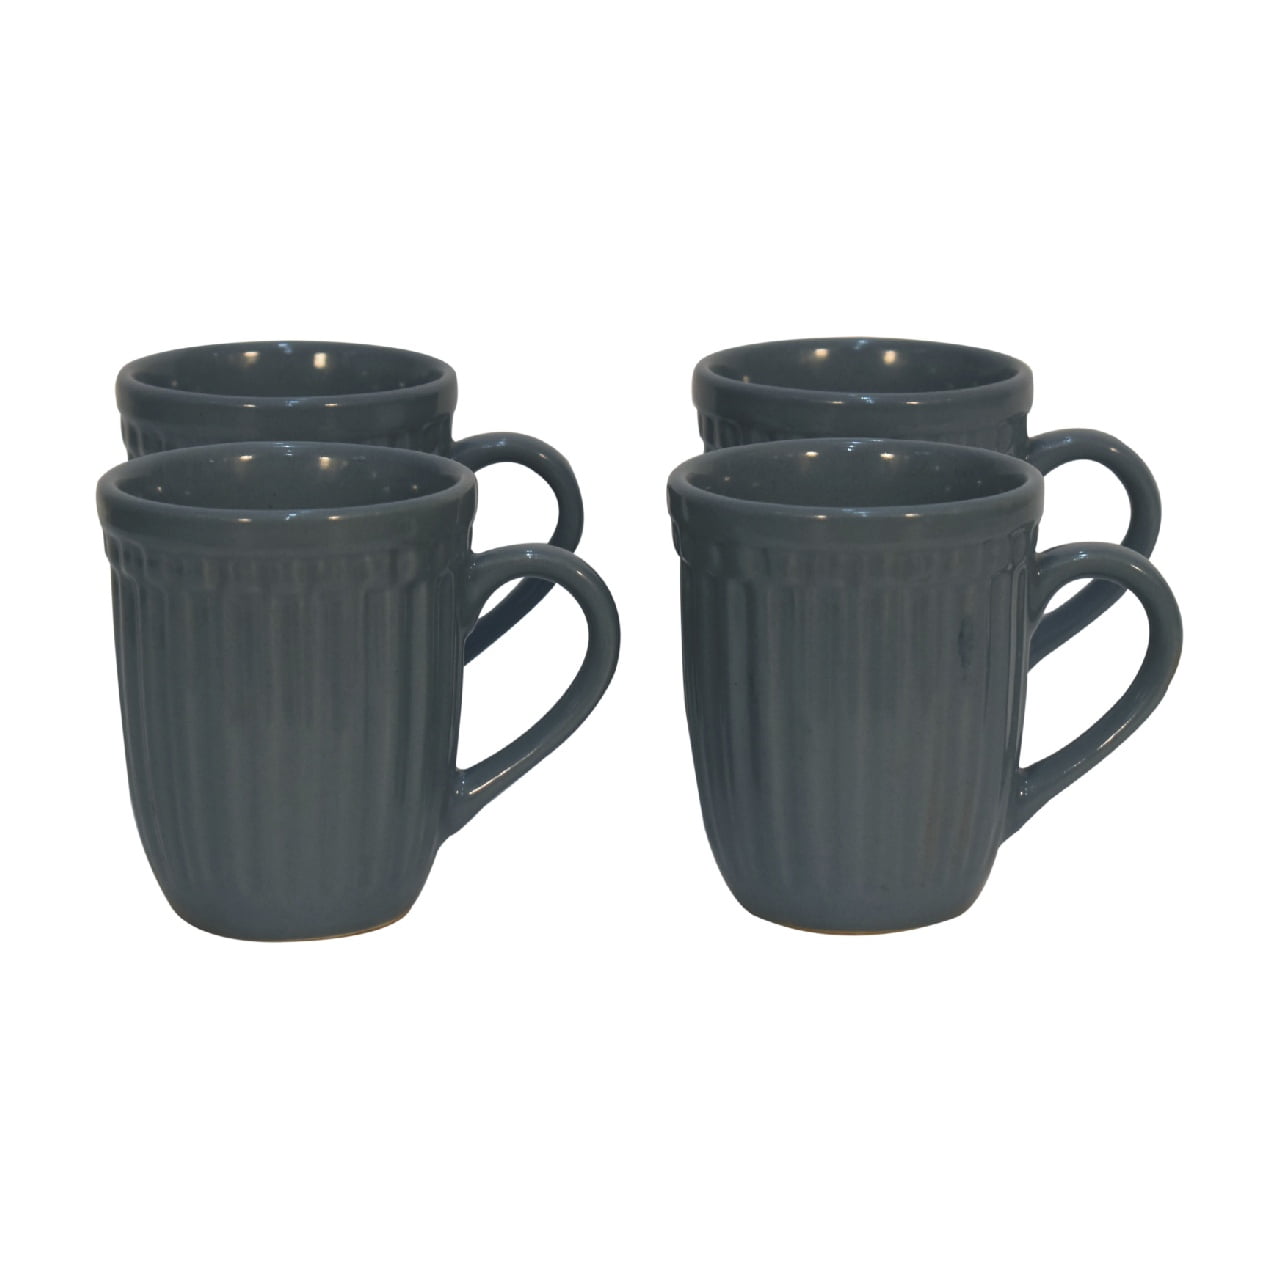 View Charcoal Grey Ribbed Mug Set of 4 information